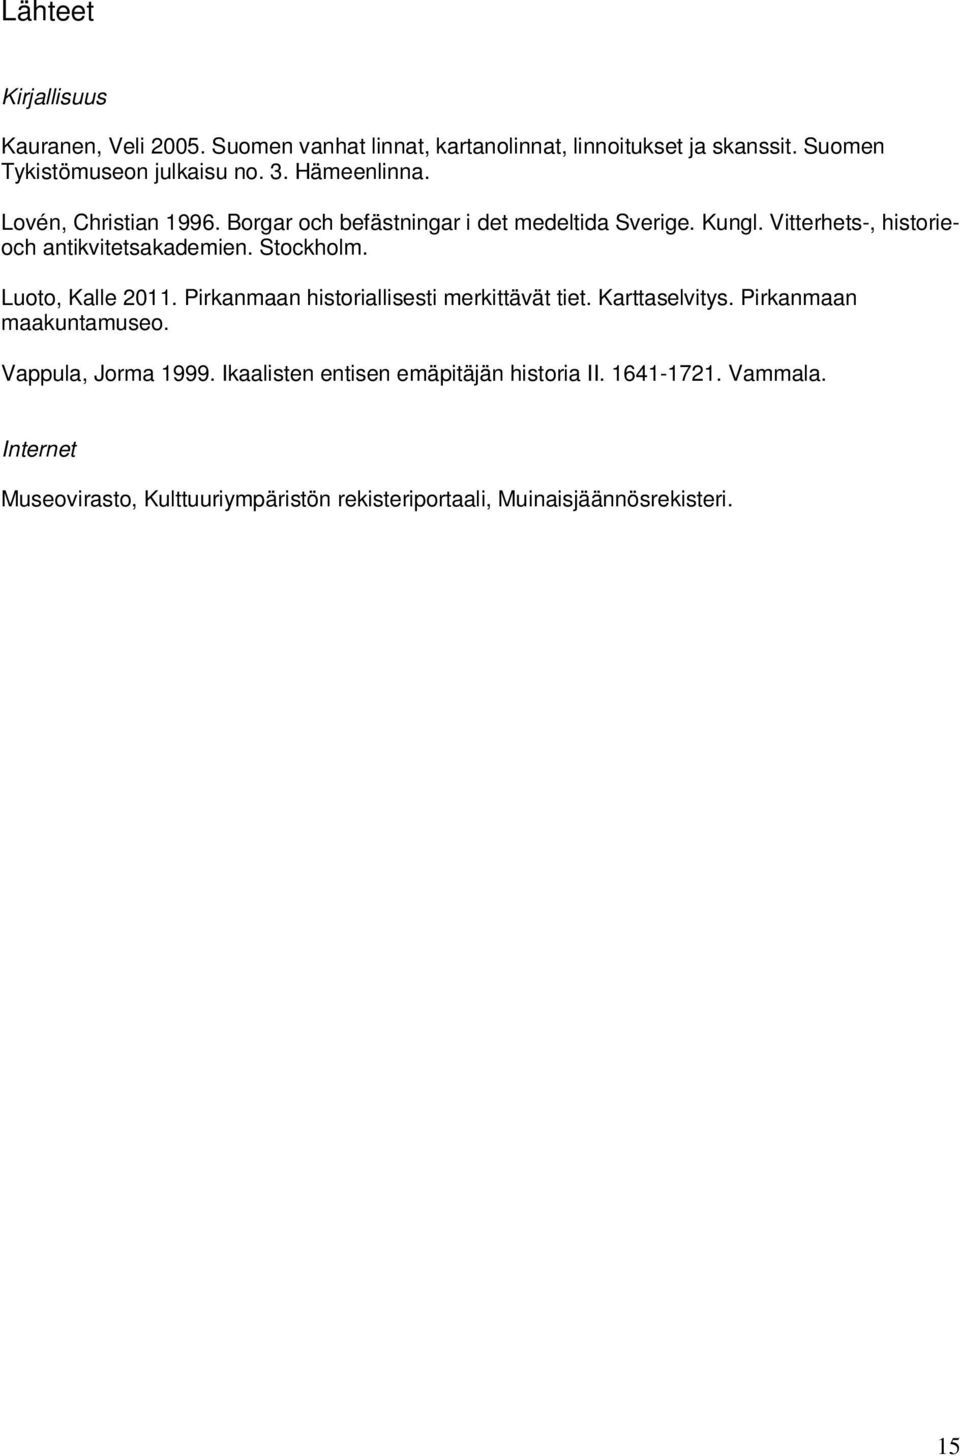 Stockholm. Luoto, Kalle 2011. Pirkanmaan historiallisesti merkittävät tiet. Karttaselvitys. Pirkanmaan maakuntamuseo. Vappula, Jorma 1999.